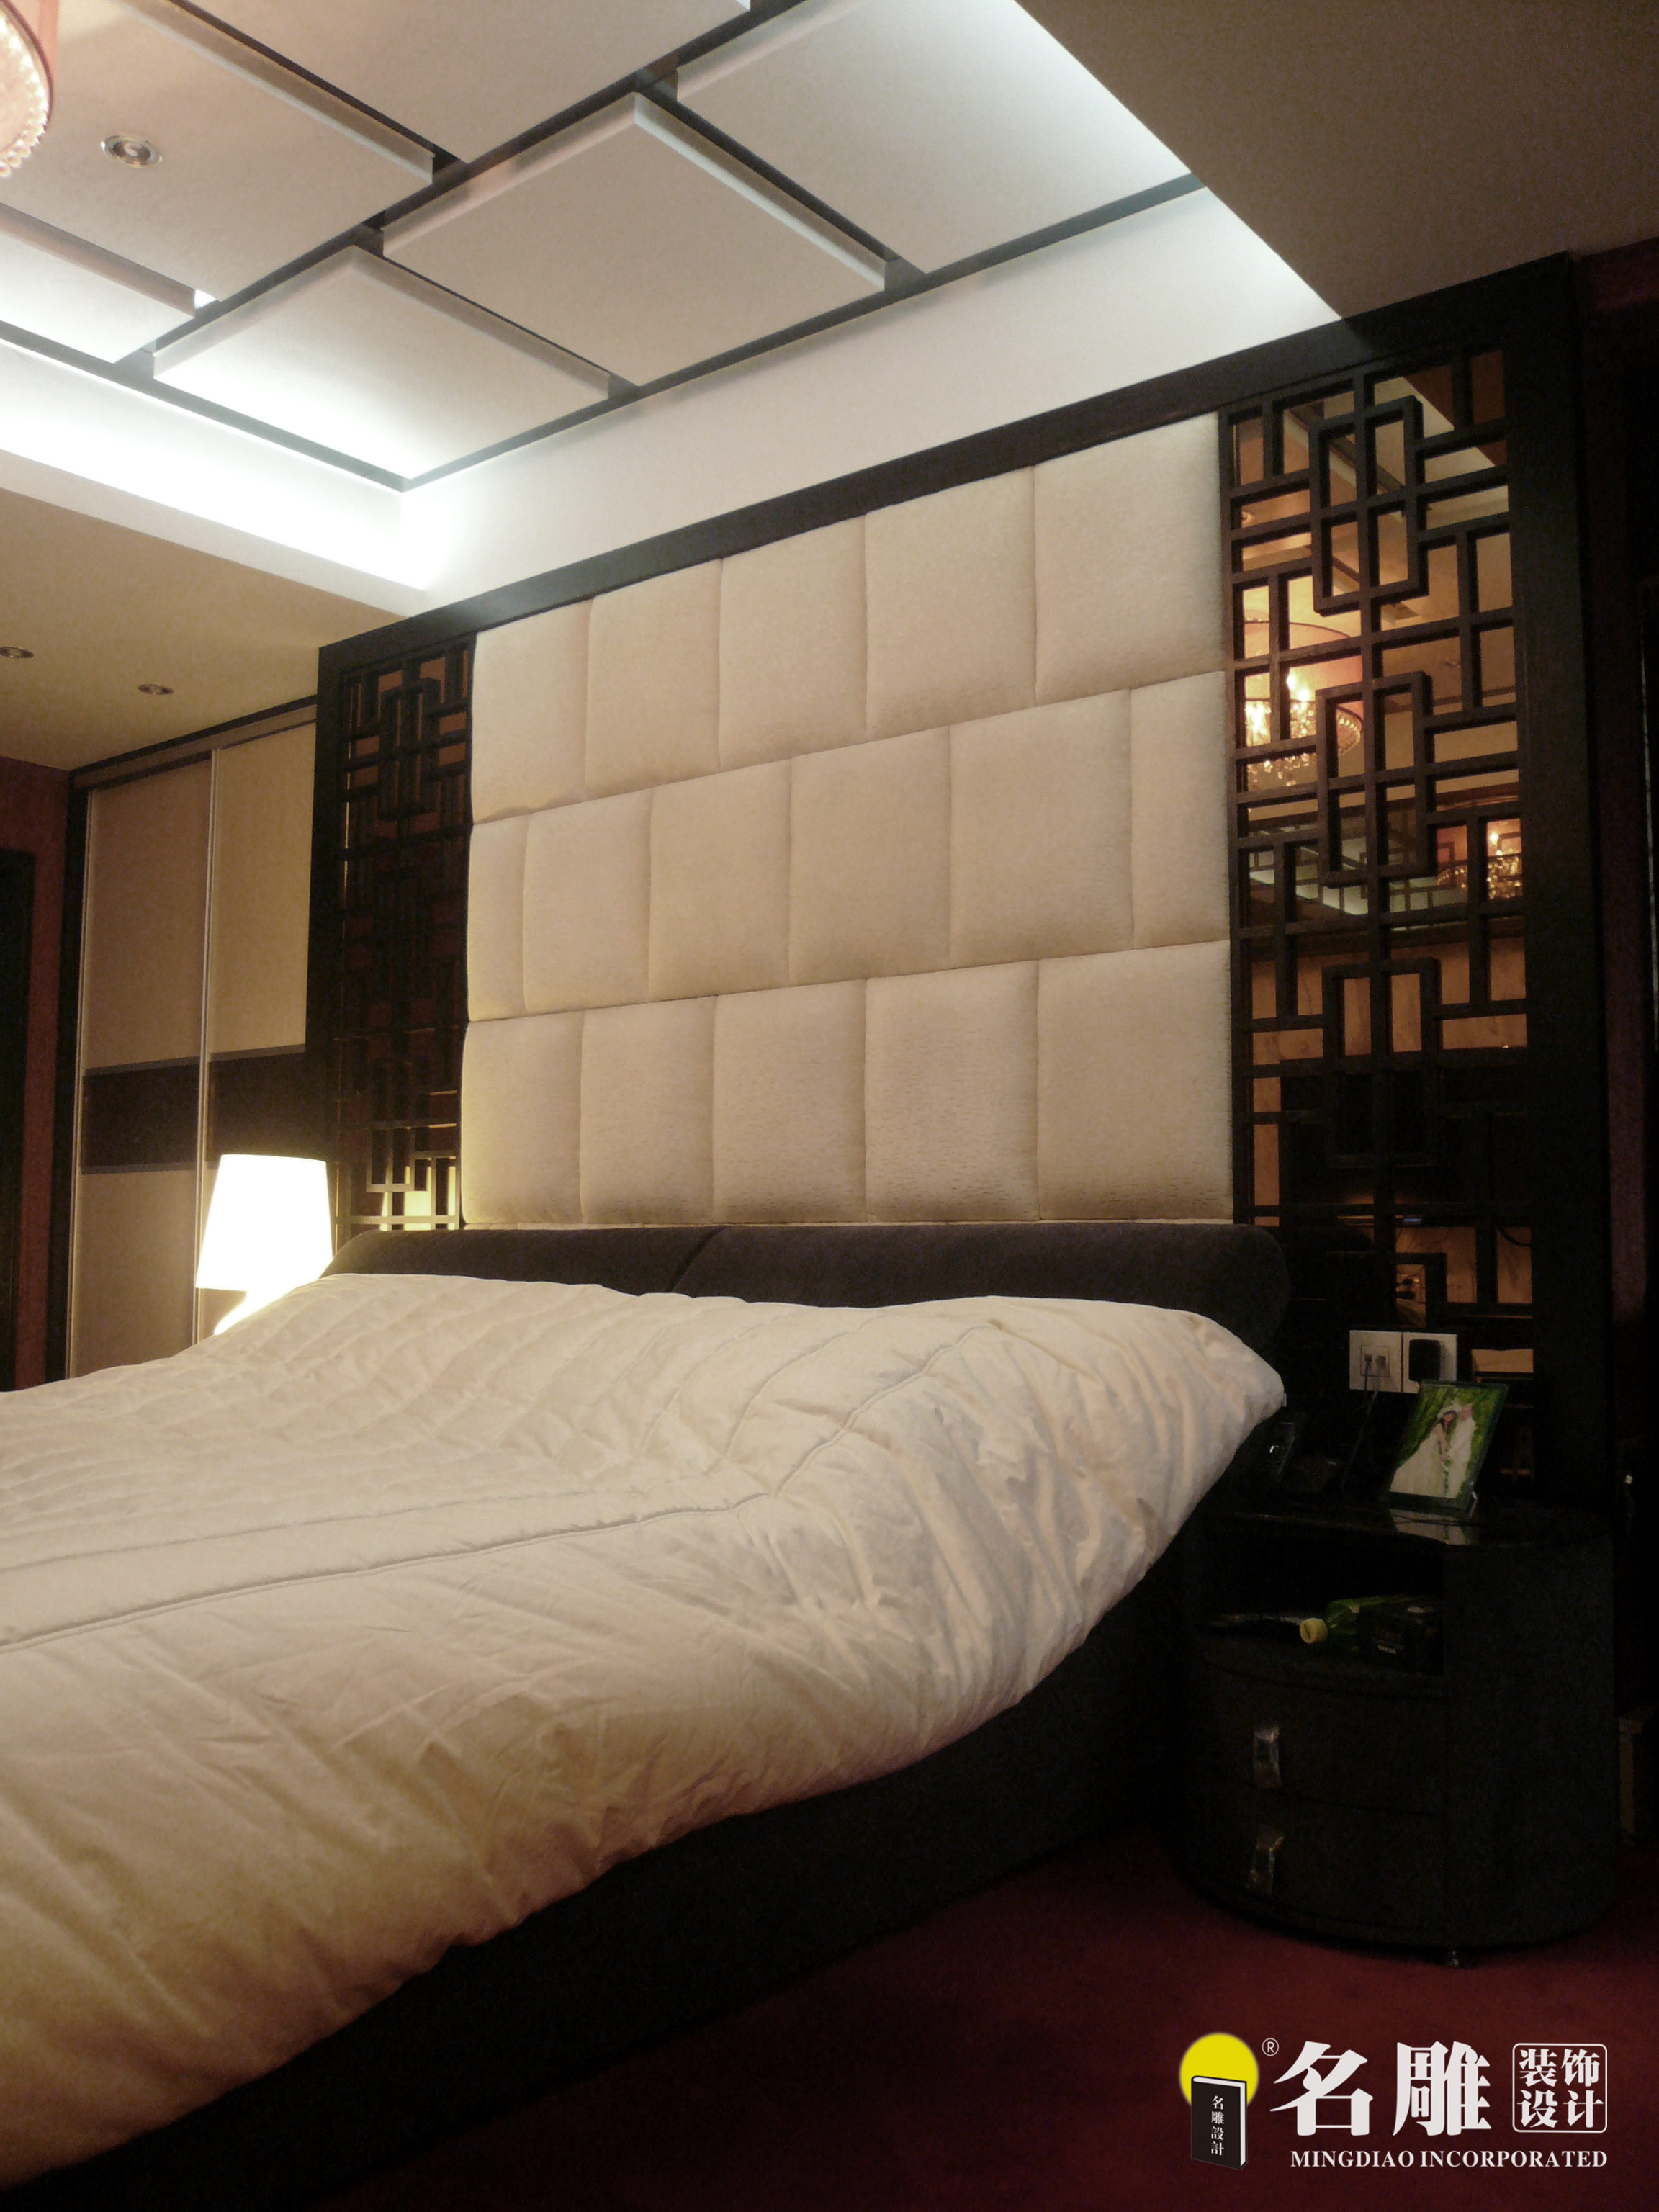 新中式 现代中式 三居 白领 文艺范 东方雅居 卧室图片来自名雕装饰设计在新中式—150平三居室东方雅居的分享